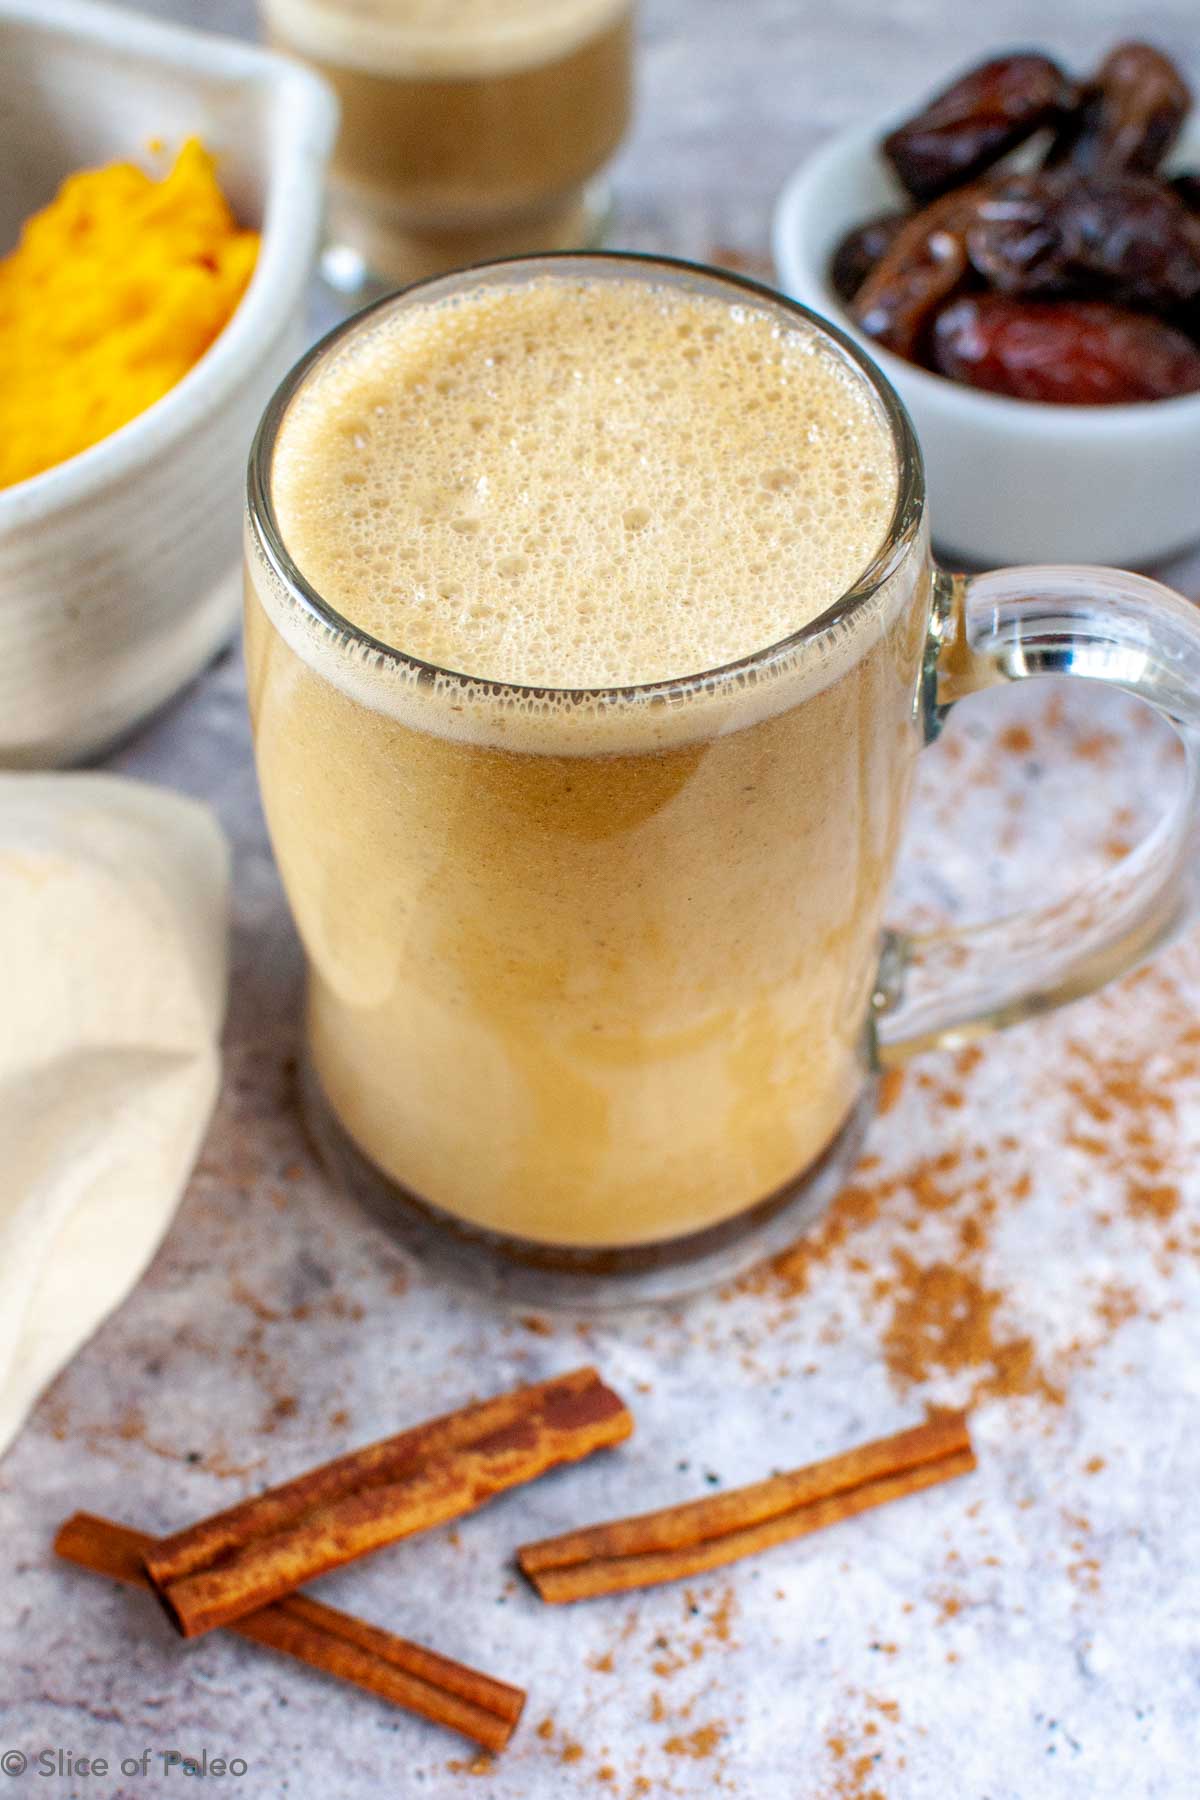 Paleo pumpkin spice latte served in a glass mug